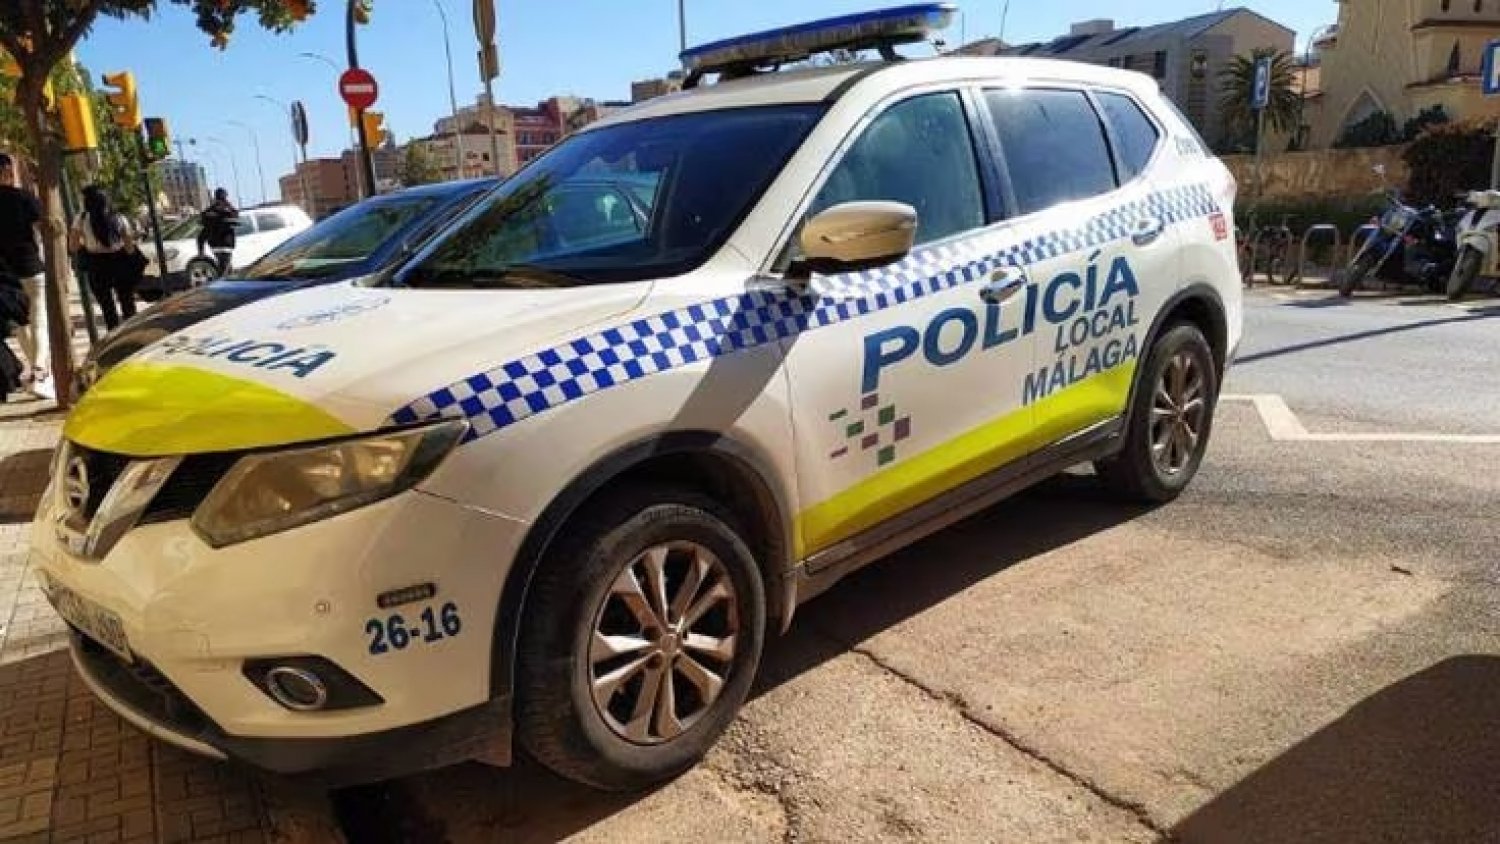 La Policía Local de Málaga tramita 88 denuncias de control de ruidos y convivencia ciudadana en la última semana